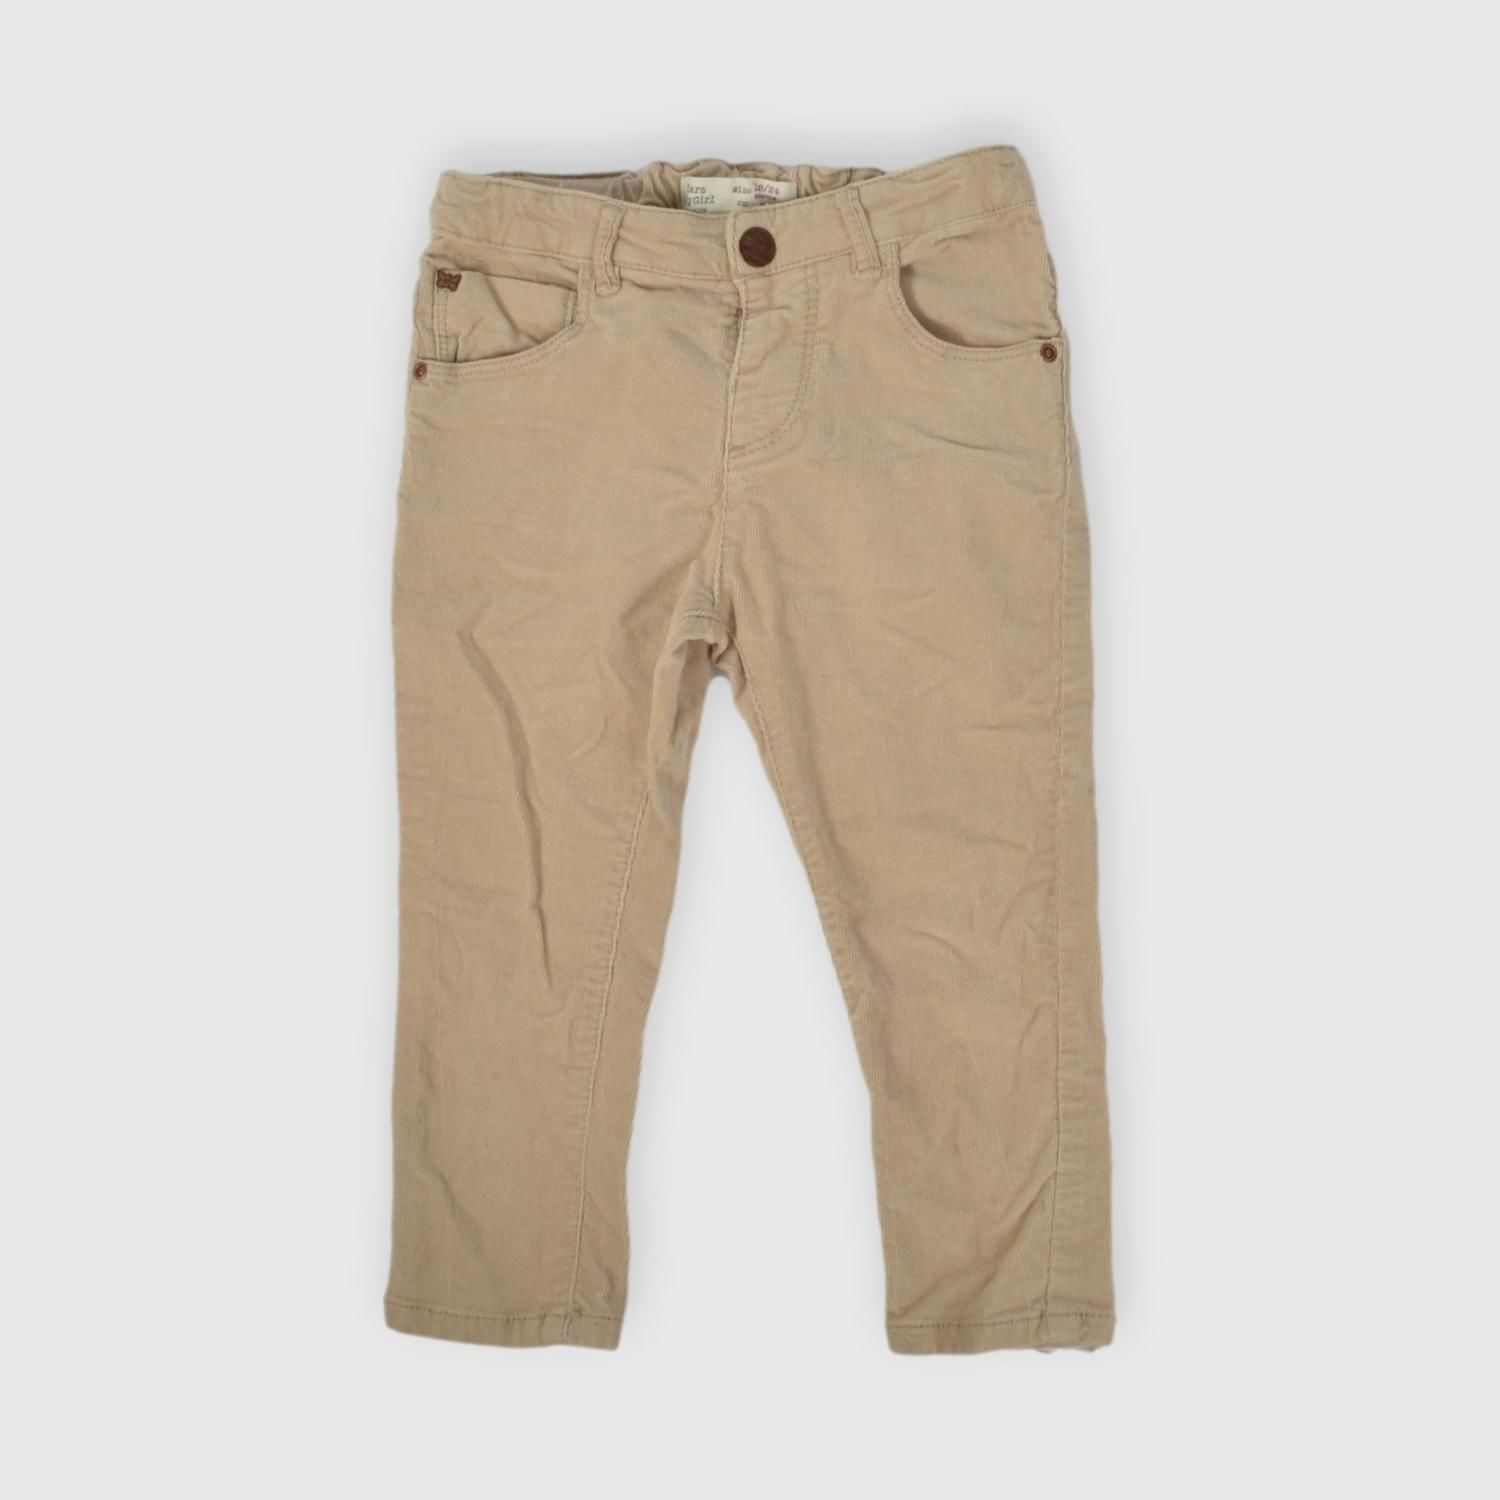 Pantalon Pana Zara 18-24 m - Ronda - Tienda online de ropa de segunda bebés y